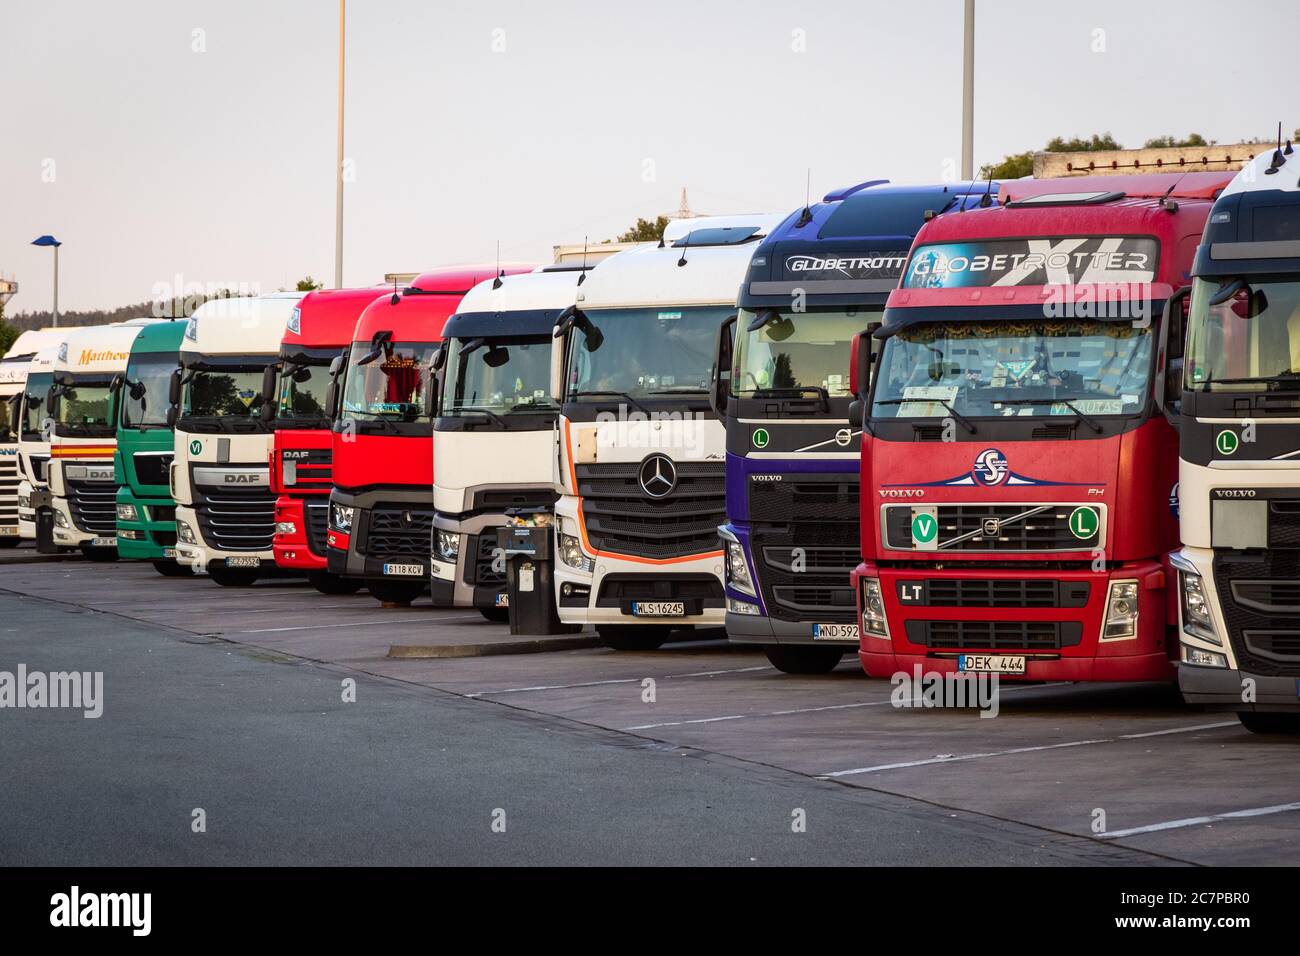 E30 HIGHWAY, GERMANIA - 14 GIUGNO 2019: Fila di vari camion aziendali parcheggiati in un camion durante la notte di parcheggio in un giorno lungo l'autostrada E30 in Germania. Foto Stock